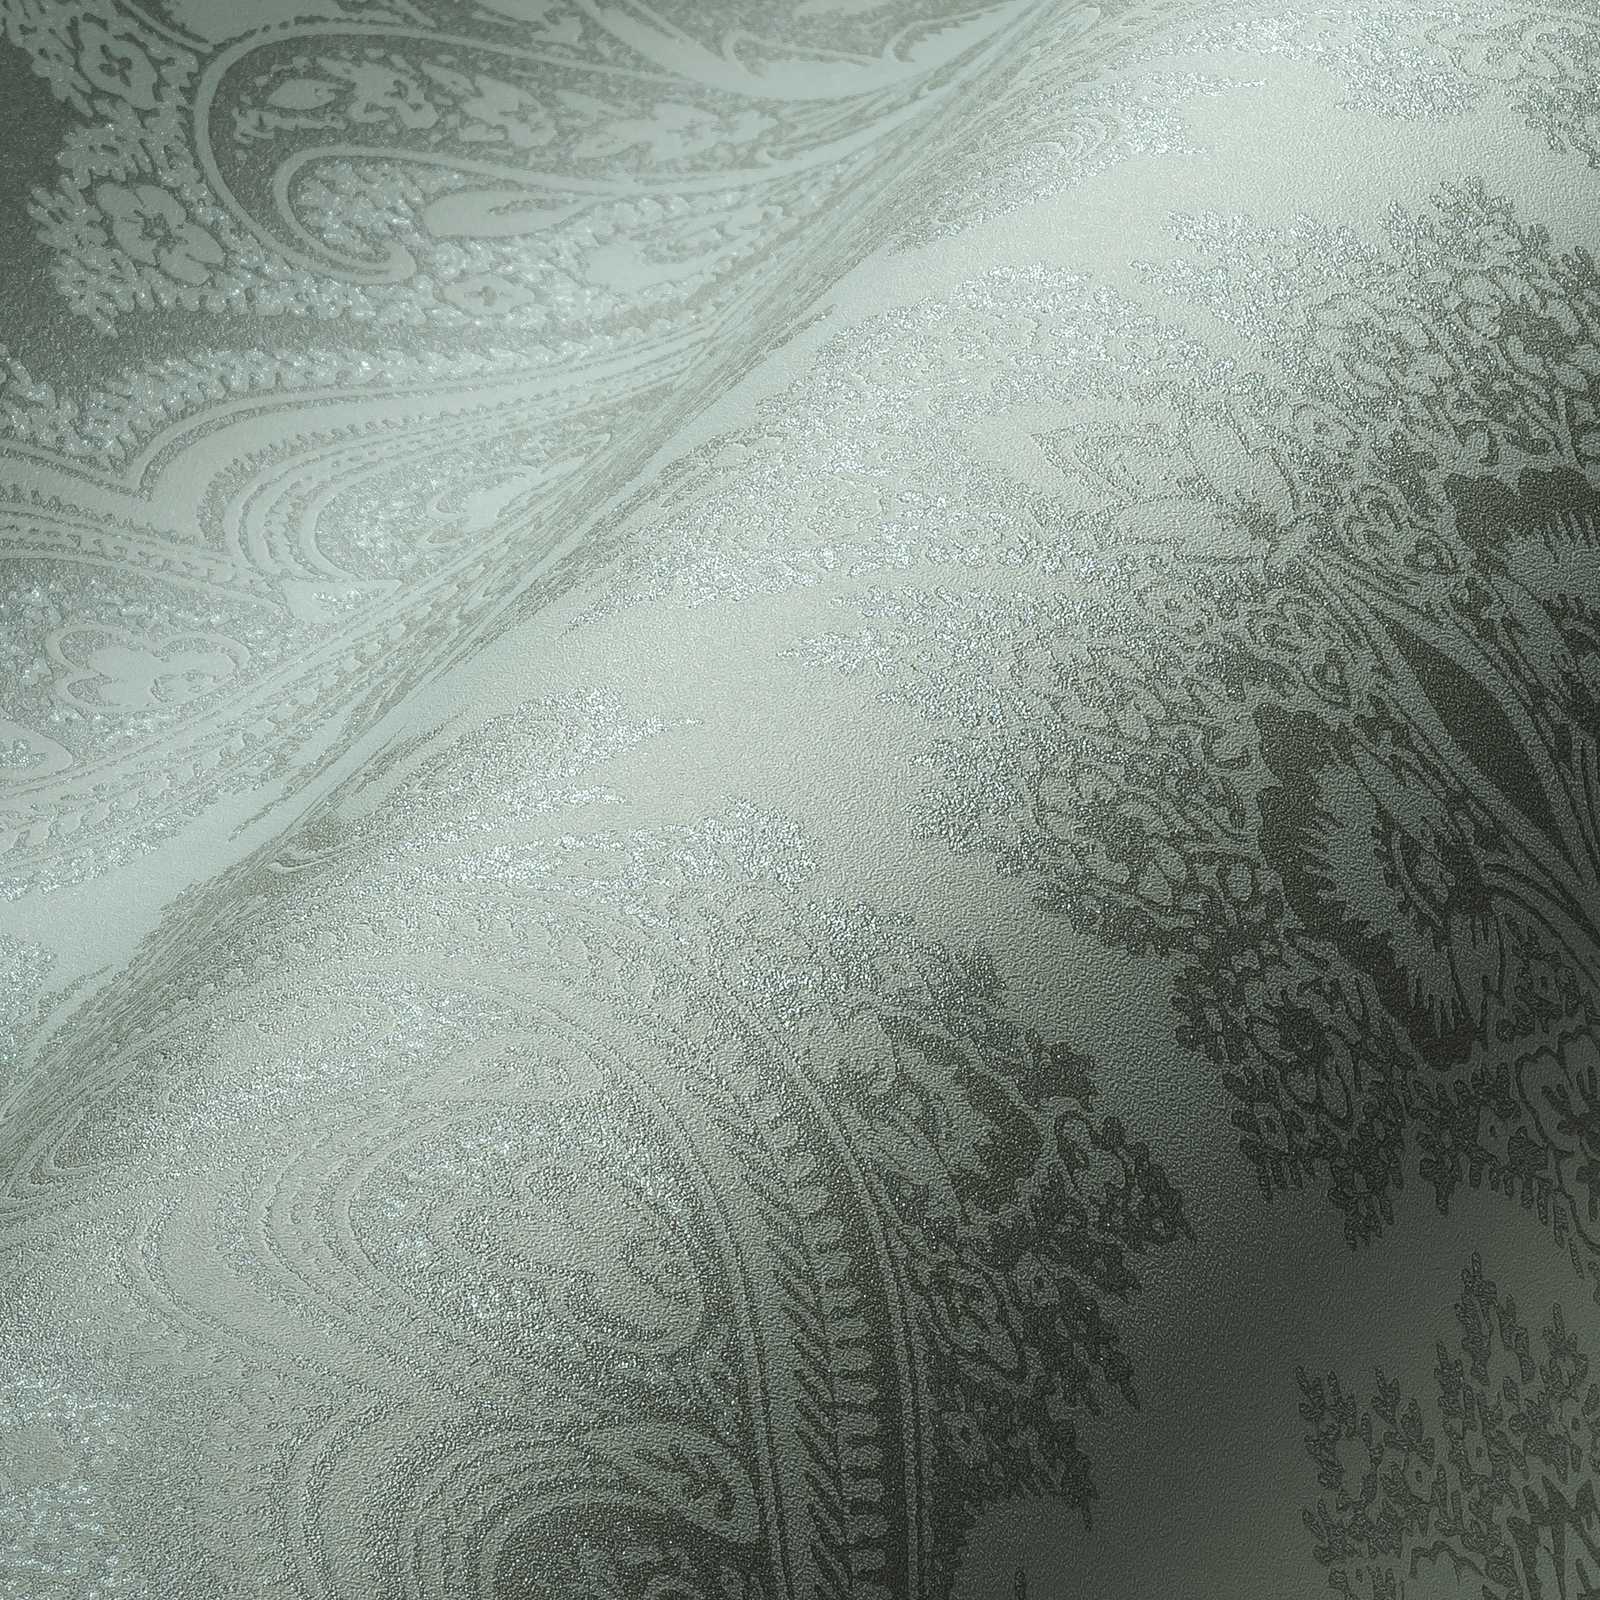             Boho behang mintgroen & zilvergrijs met ornament patroon - metallic, groen
        